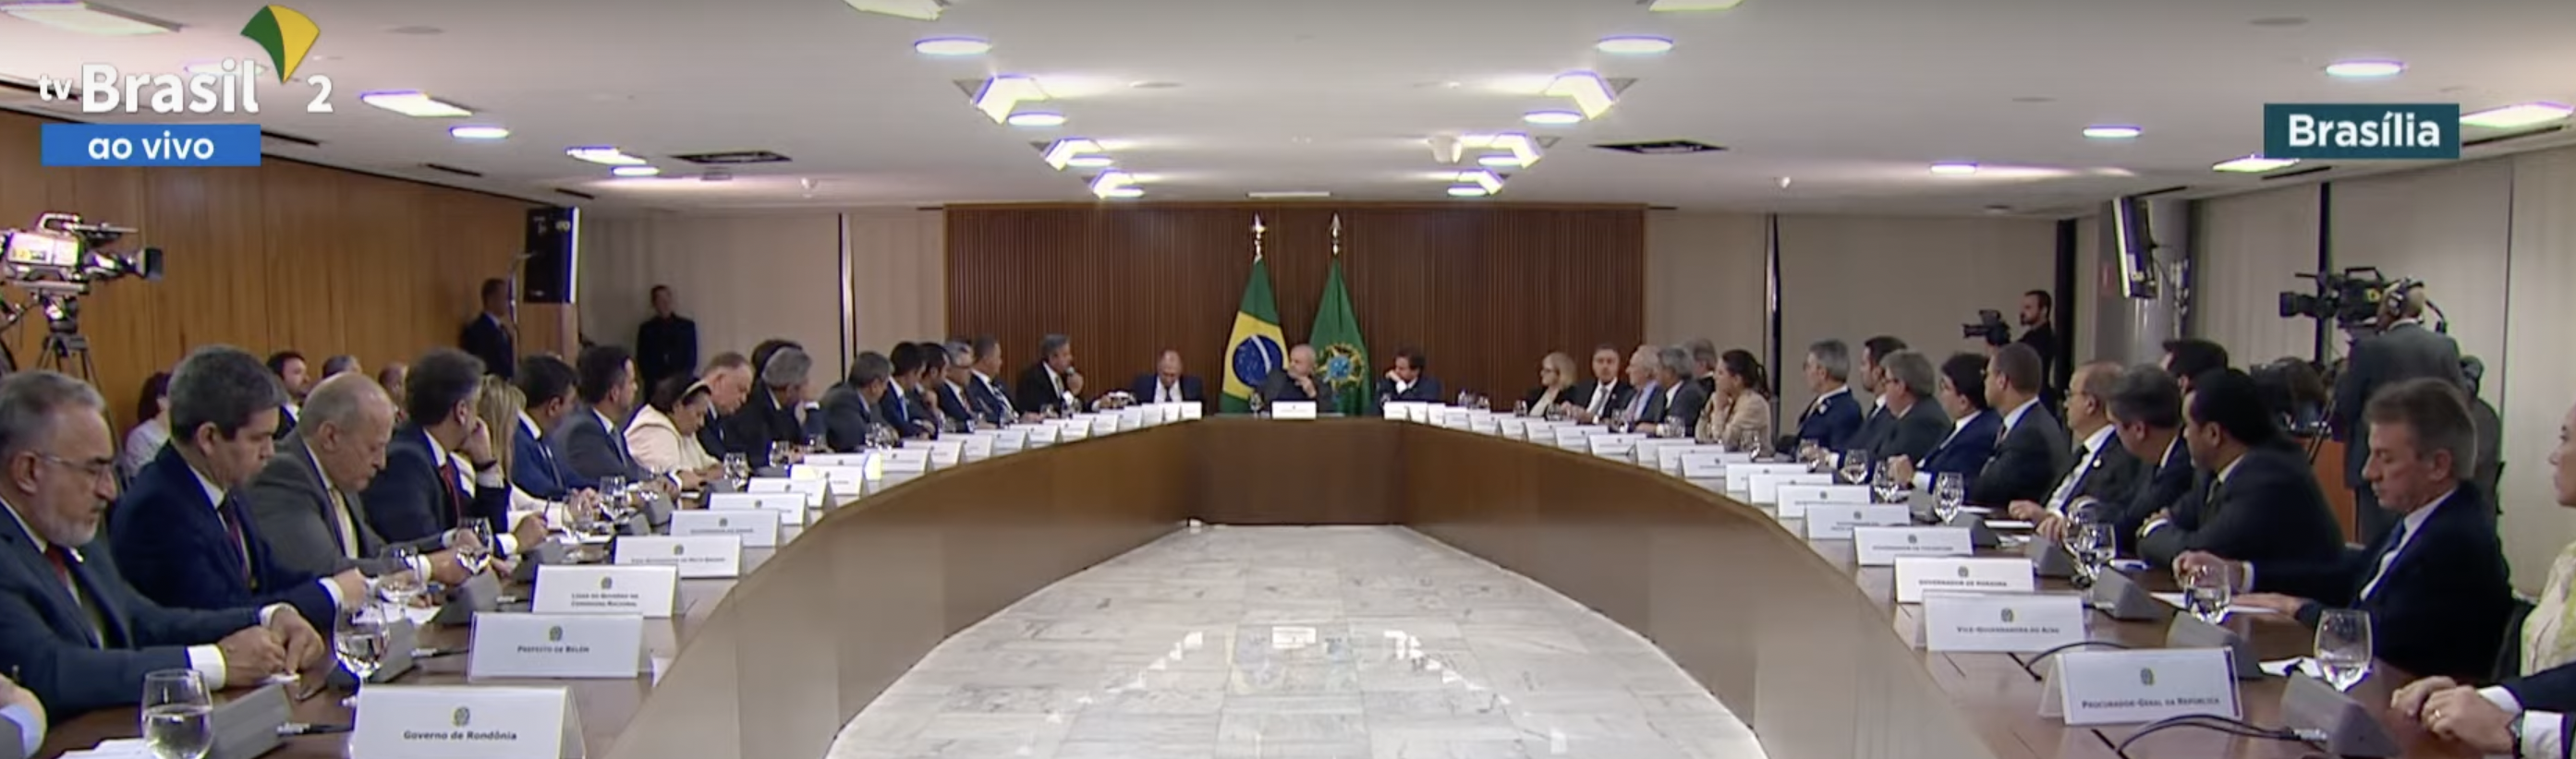 Governador viaja à Brasília e encontra líderes dos Poderes da República - Foto: Reprodução/TV Brasil